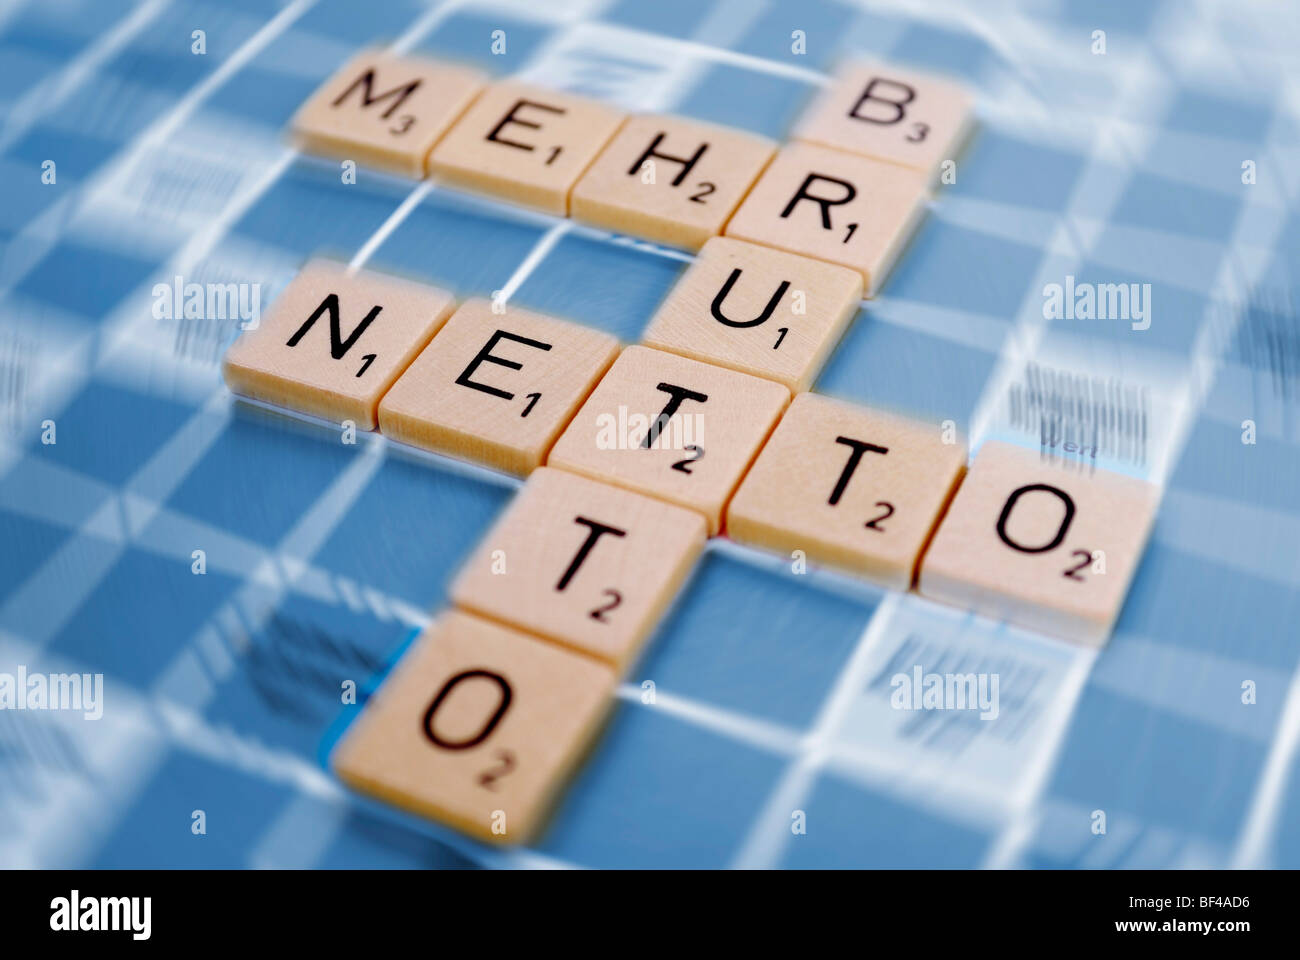 Die Worte "Brutto", "Mehr" und "Netto", Deutsch für "mehr Netto vom  Brutto", bestehend aus Fliesen, symbolisches Bild für Steuer schneiden, pa  Stockfotografie - Alamy